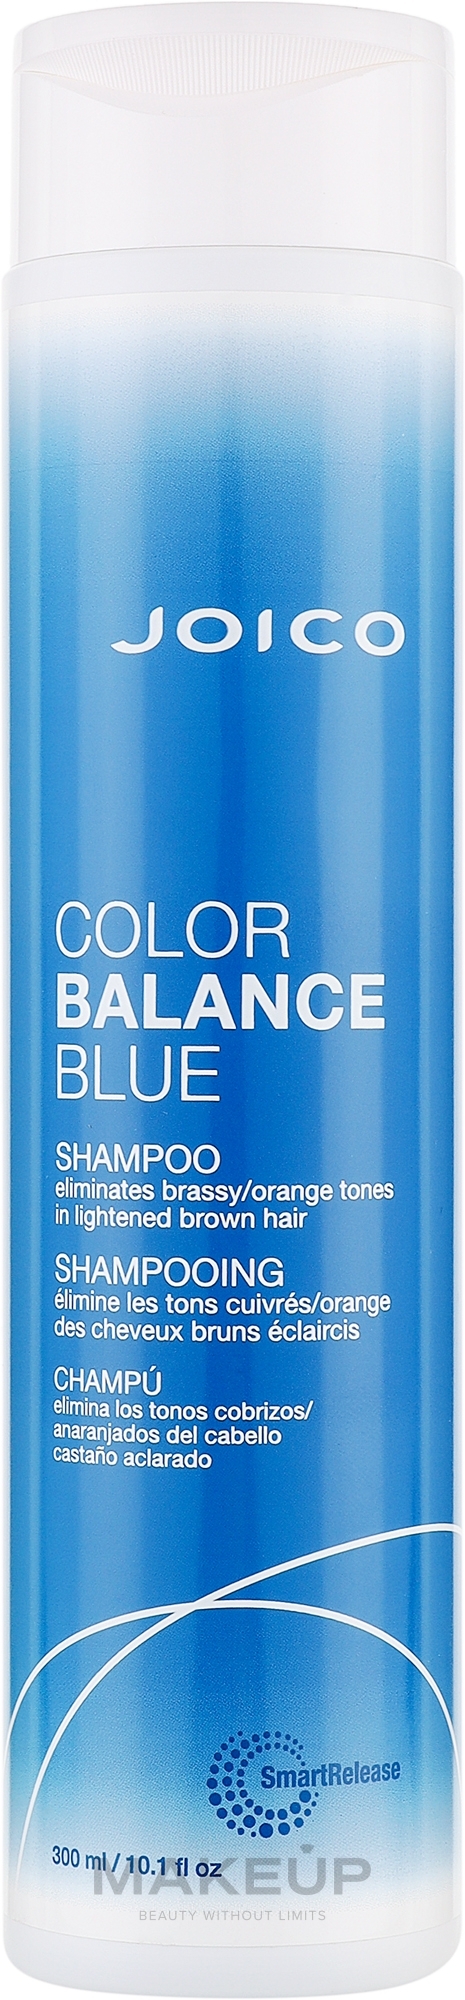 Оттеночный шампунь для поддержания холодных оттенков - Joico Color Balance Blue Shampoo — фото 300ml